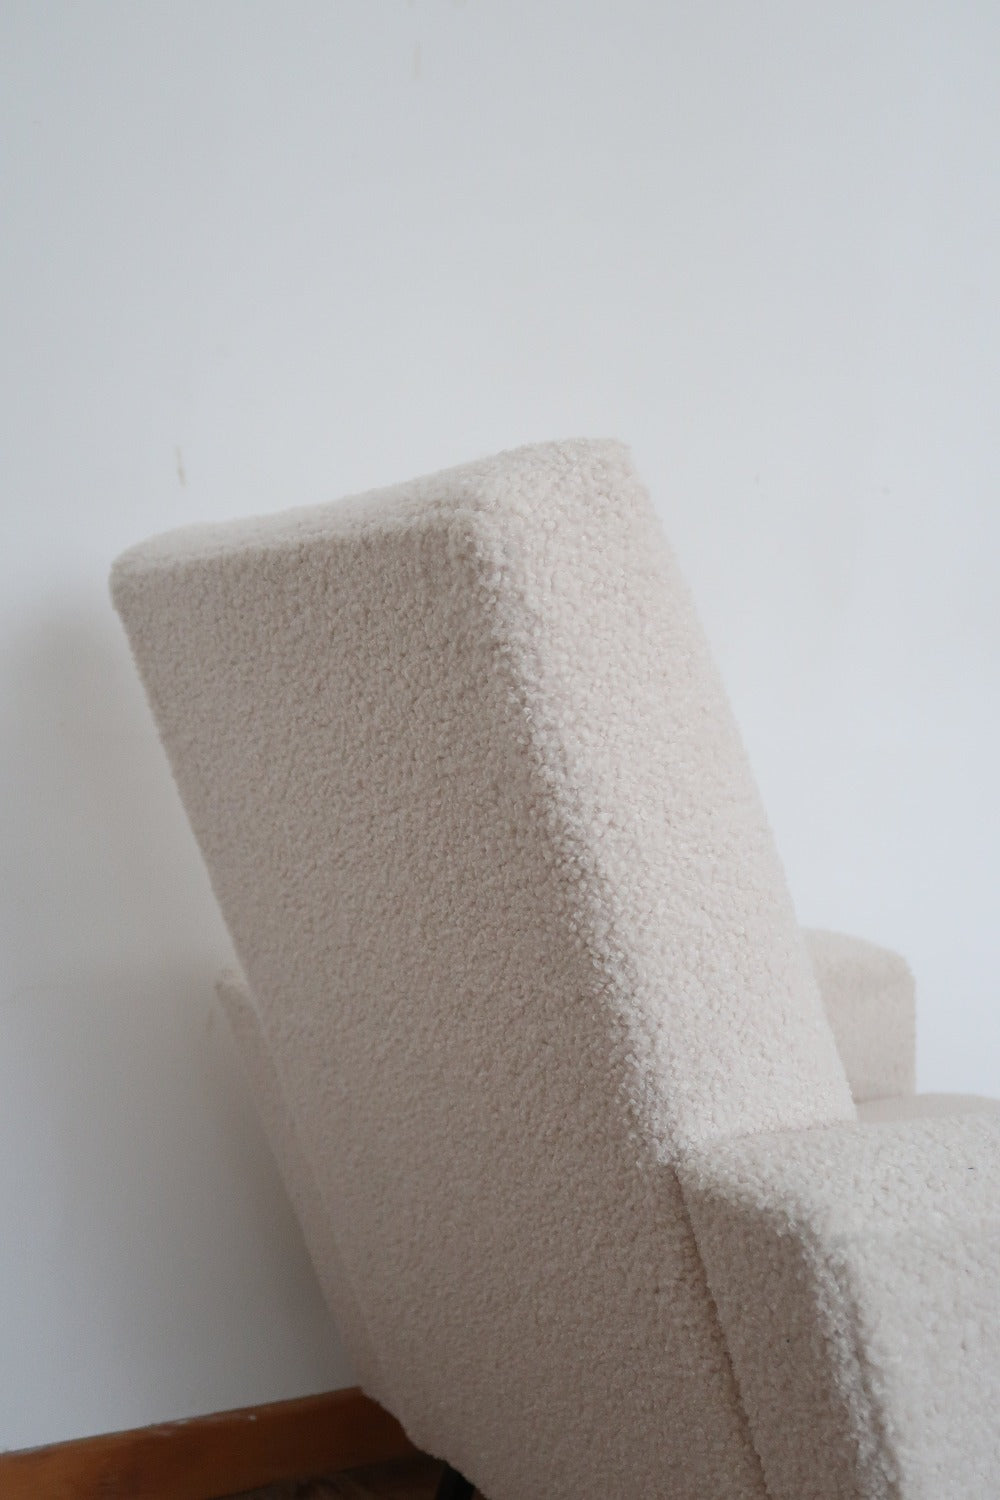 fauteuil scandinave danois chauffeuse vintage laine bouclette blanc pied métallique noir 